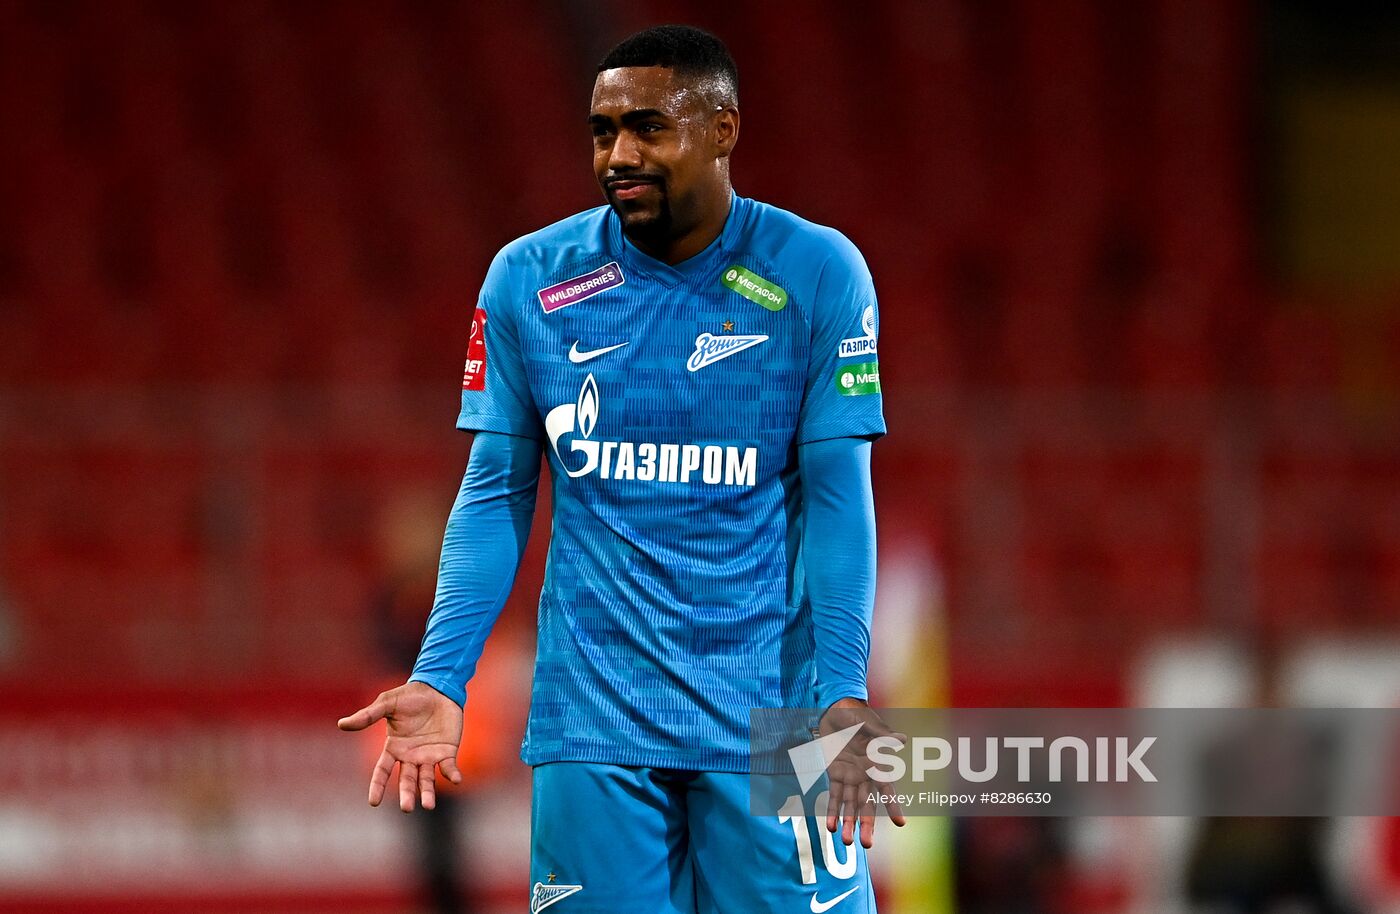 Russia Soccer Cup Spartak - Zenit